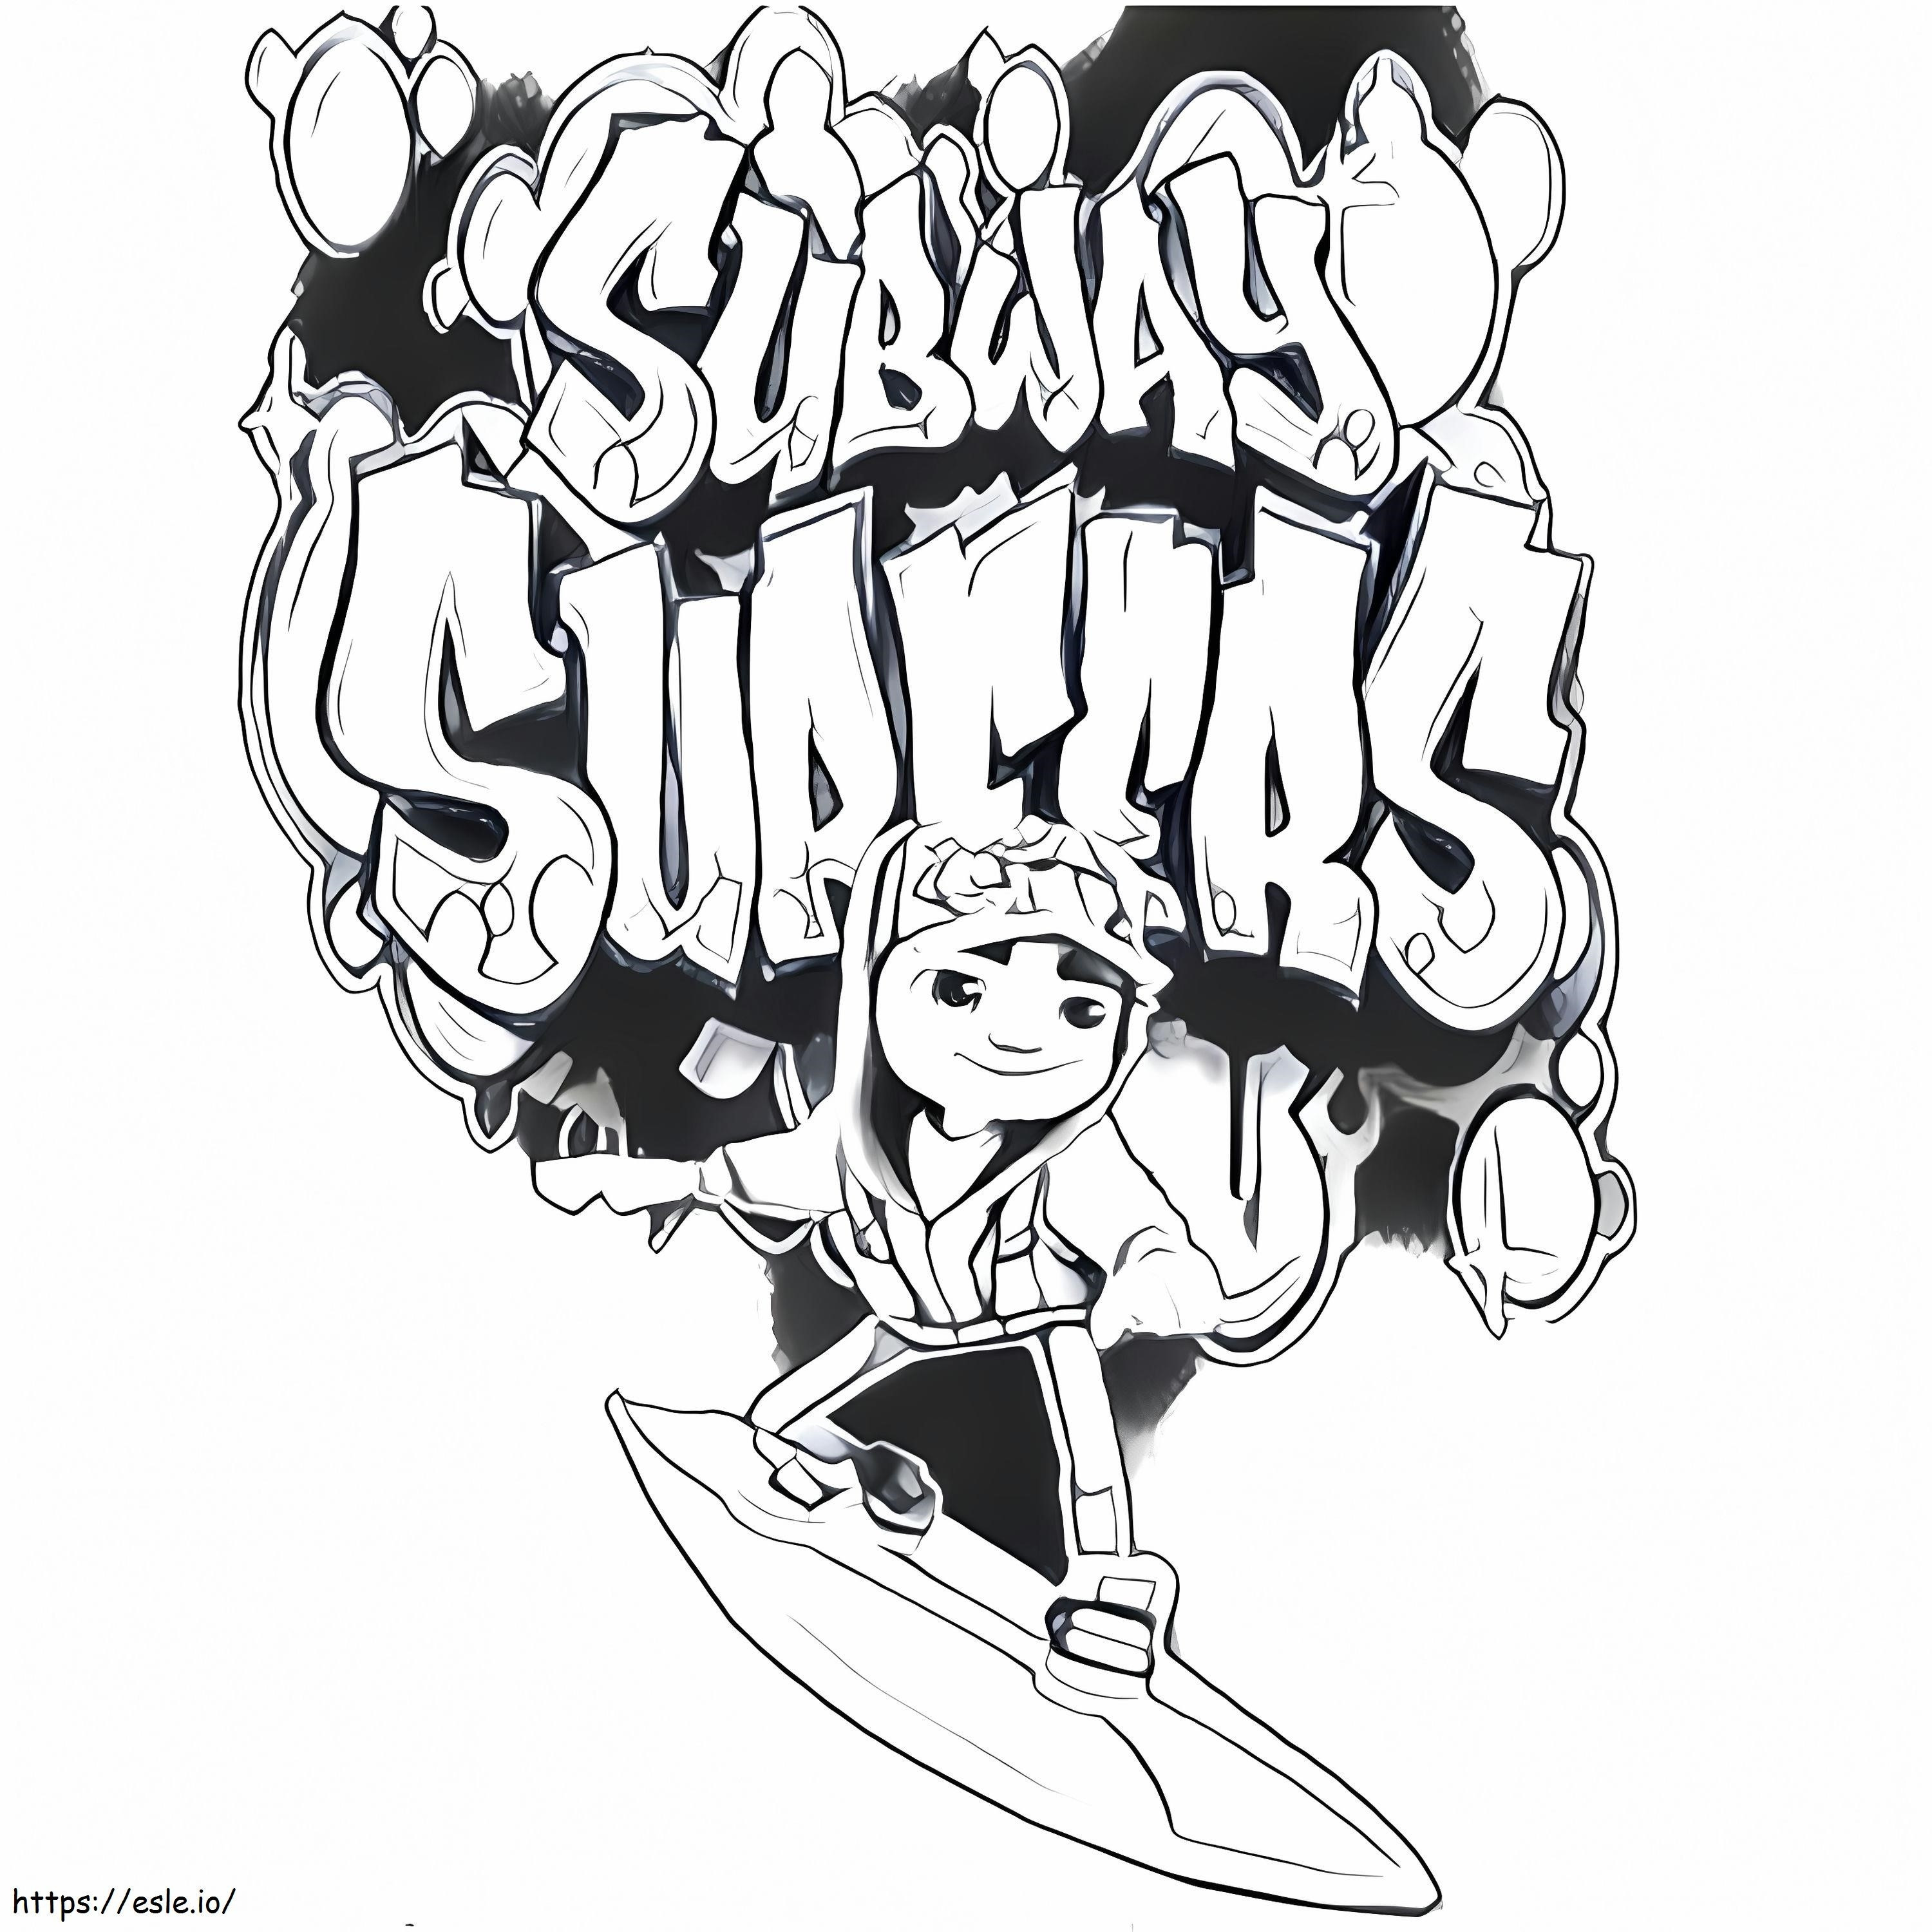 Subway Surfers gratuit de colorat